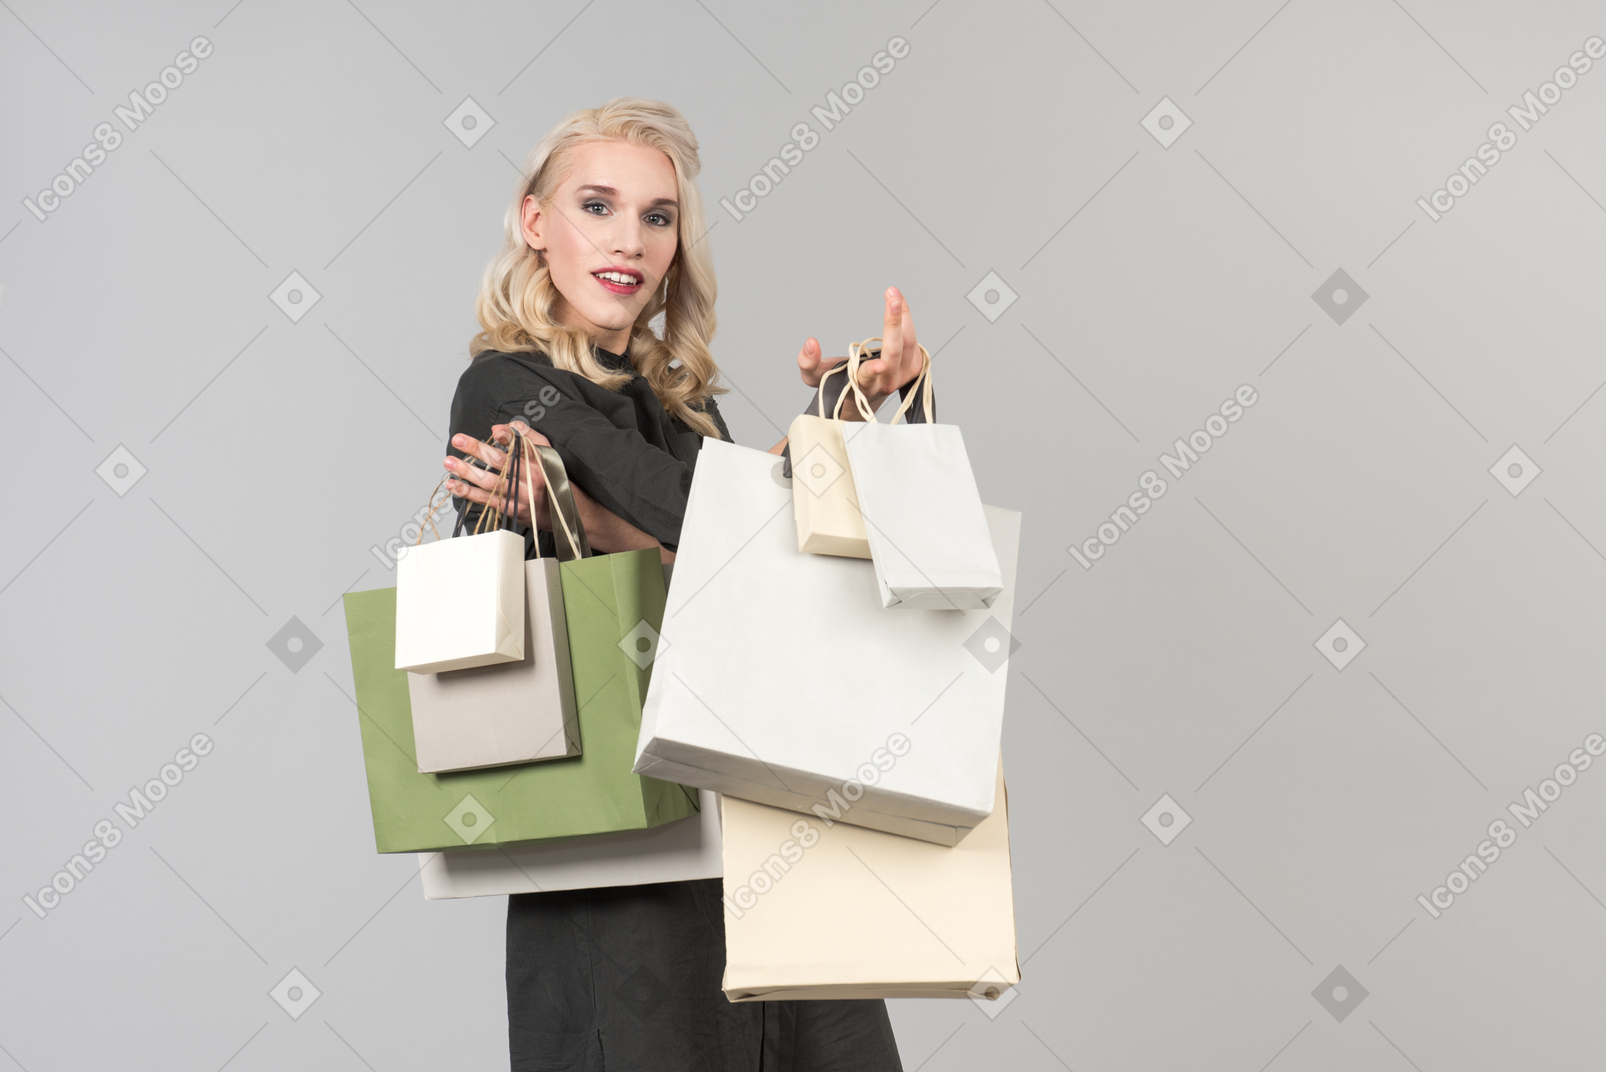 Una joven rubia hermosa con un vestido negro con un montón de bolsas de compras en ambas manos